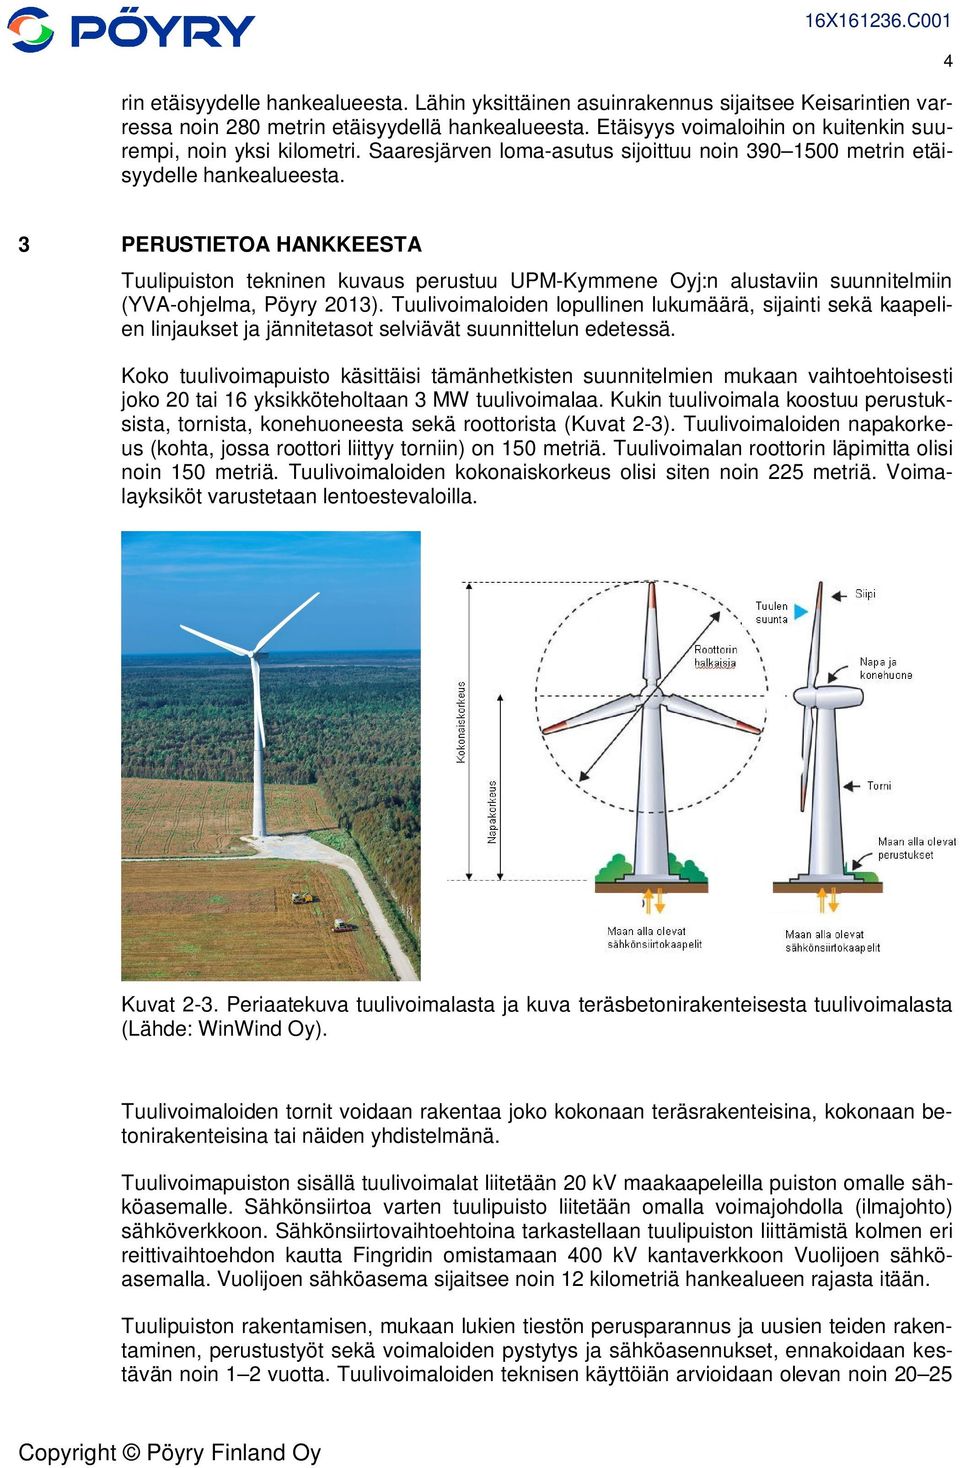 3 PERUSTIETOA HANKKEESTA Tuulipuiston tekninen kuvaus perustuu UPM-Kymmene Oyj:n alustaviin suunnitelmiin (YVA-ohjelma, Pöyry 2013).